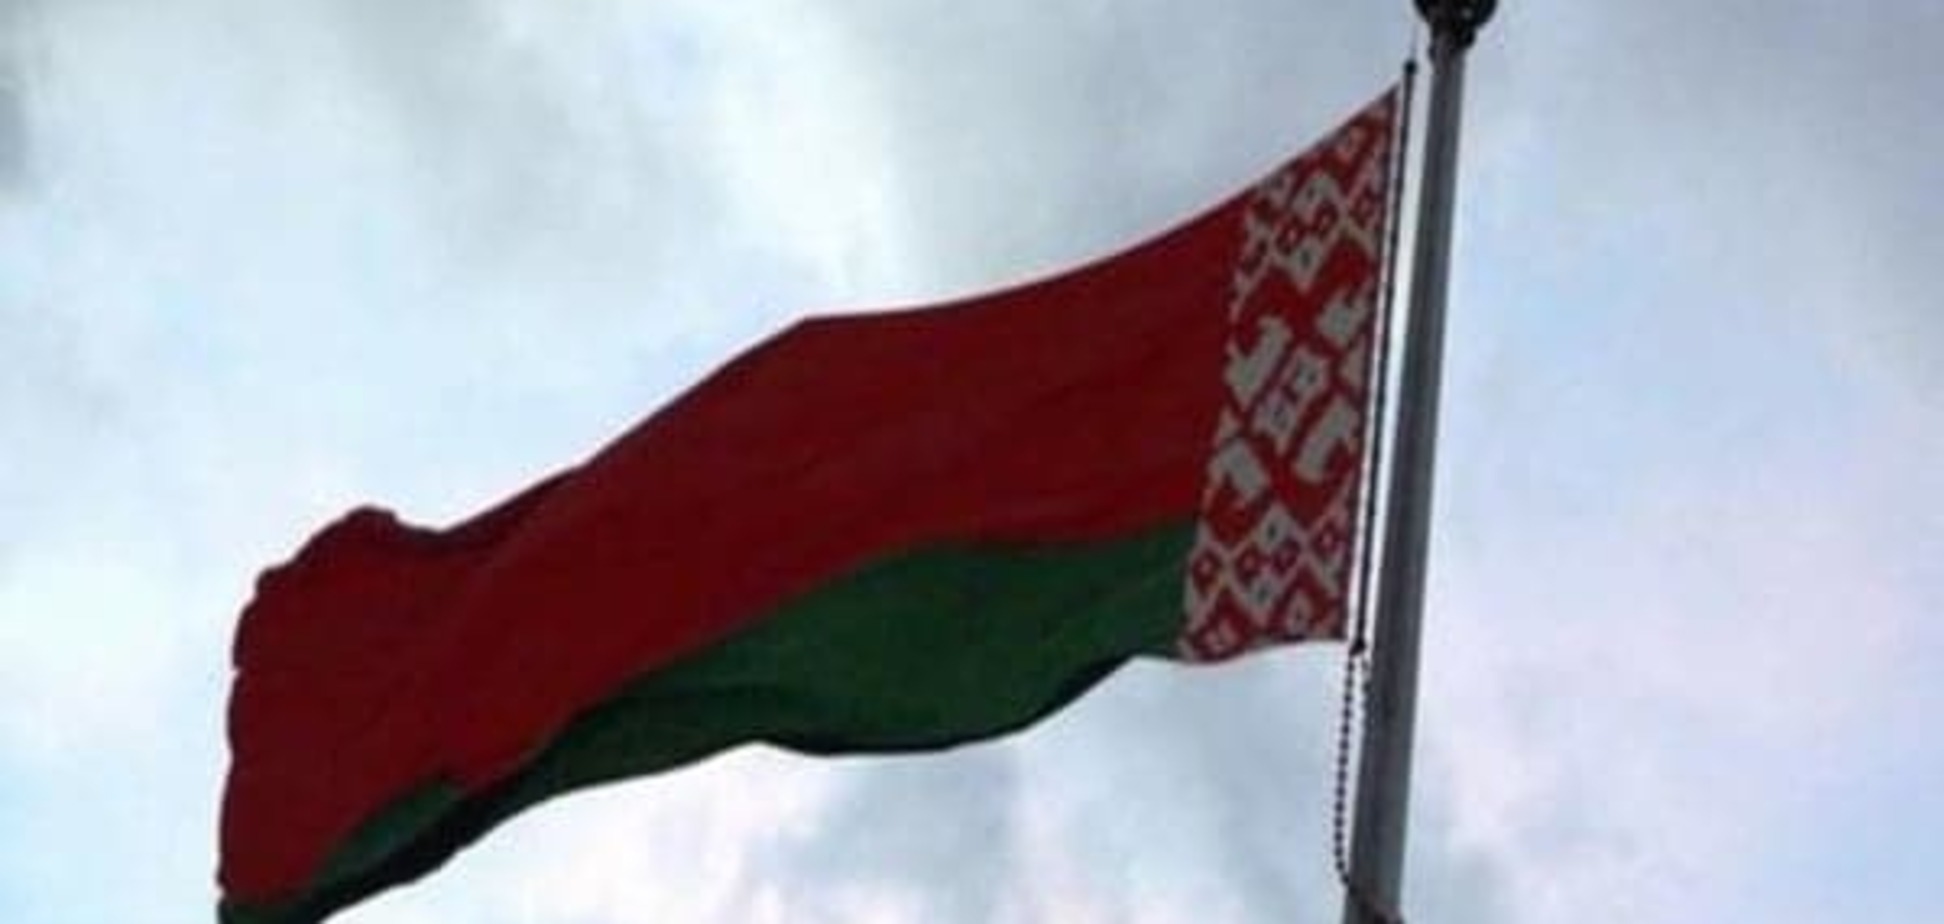 Коментар: Білорусь - довгий шлях до незалежності